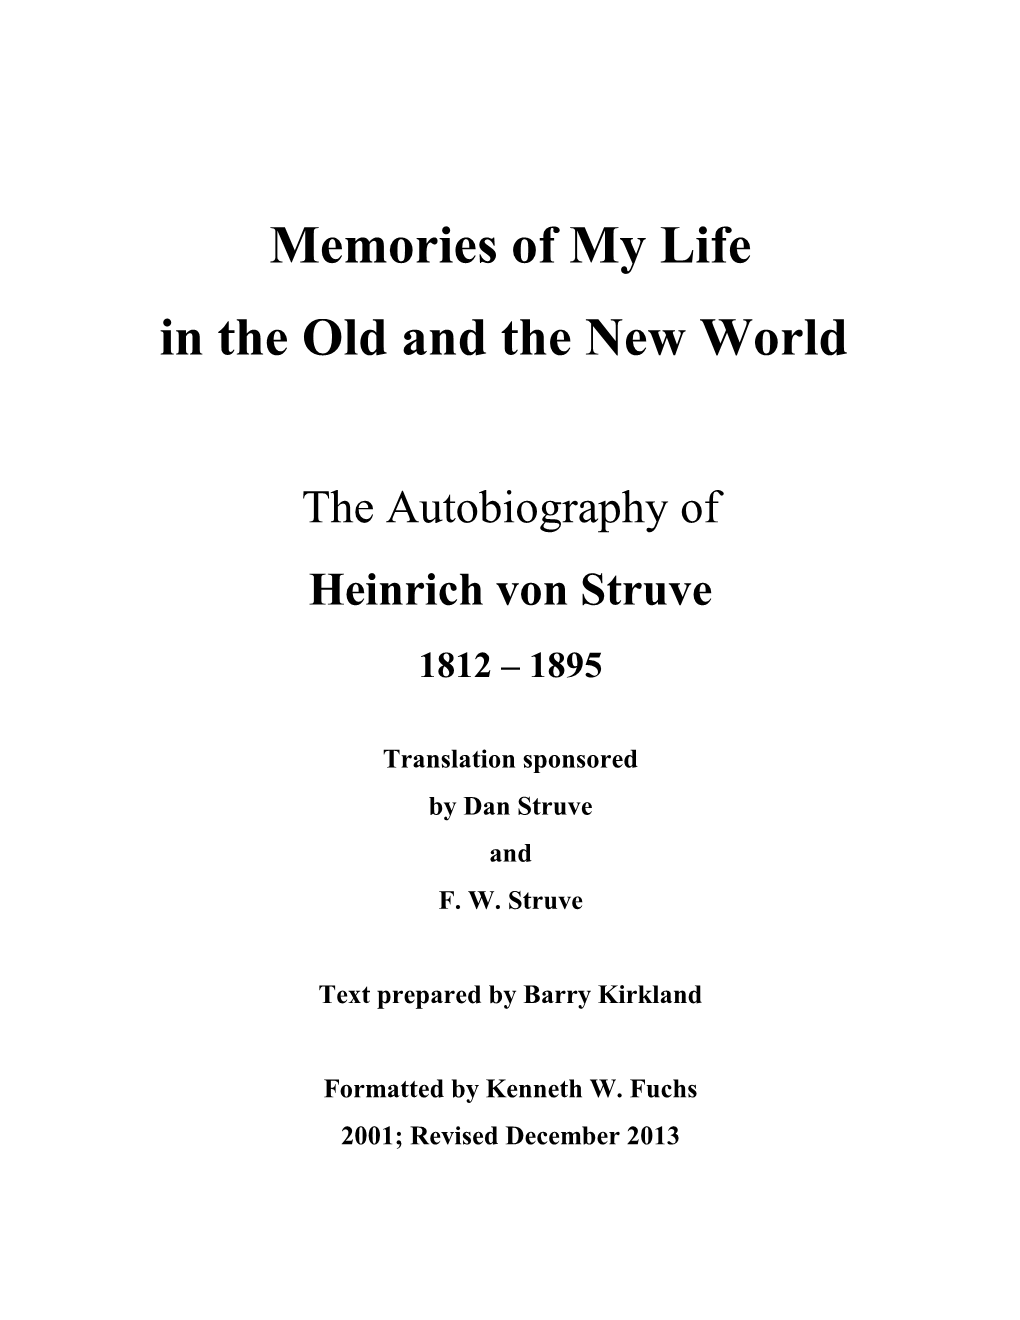 The Autobiography of Heinrich Von Struve.Pdf